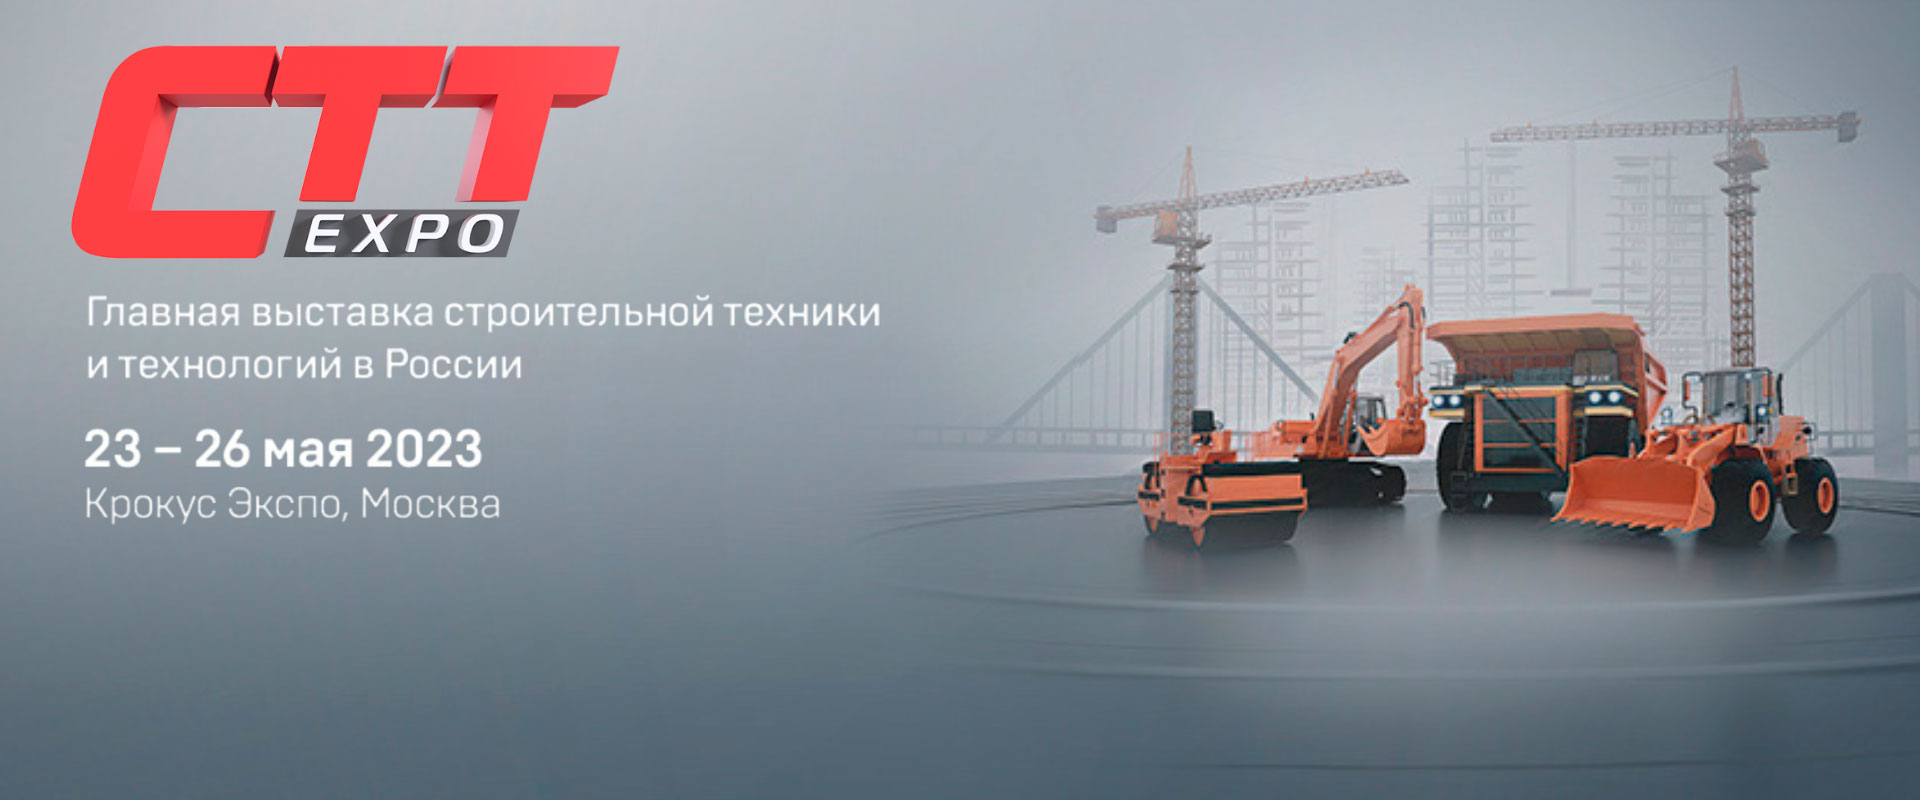 CTT Expo 2023 главная выставка строительной техники и технологий в России